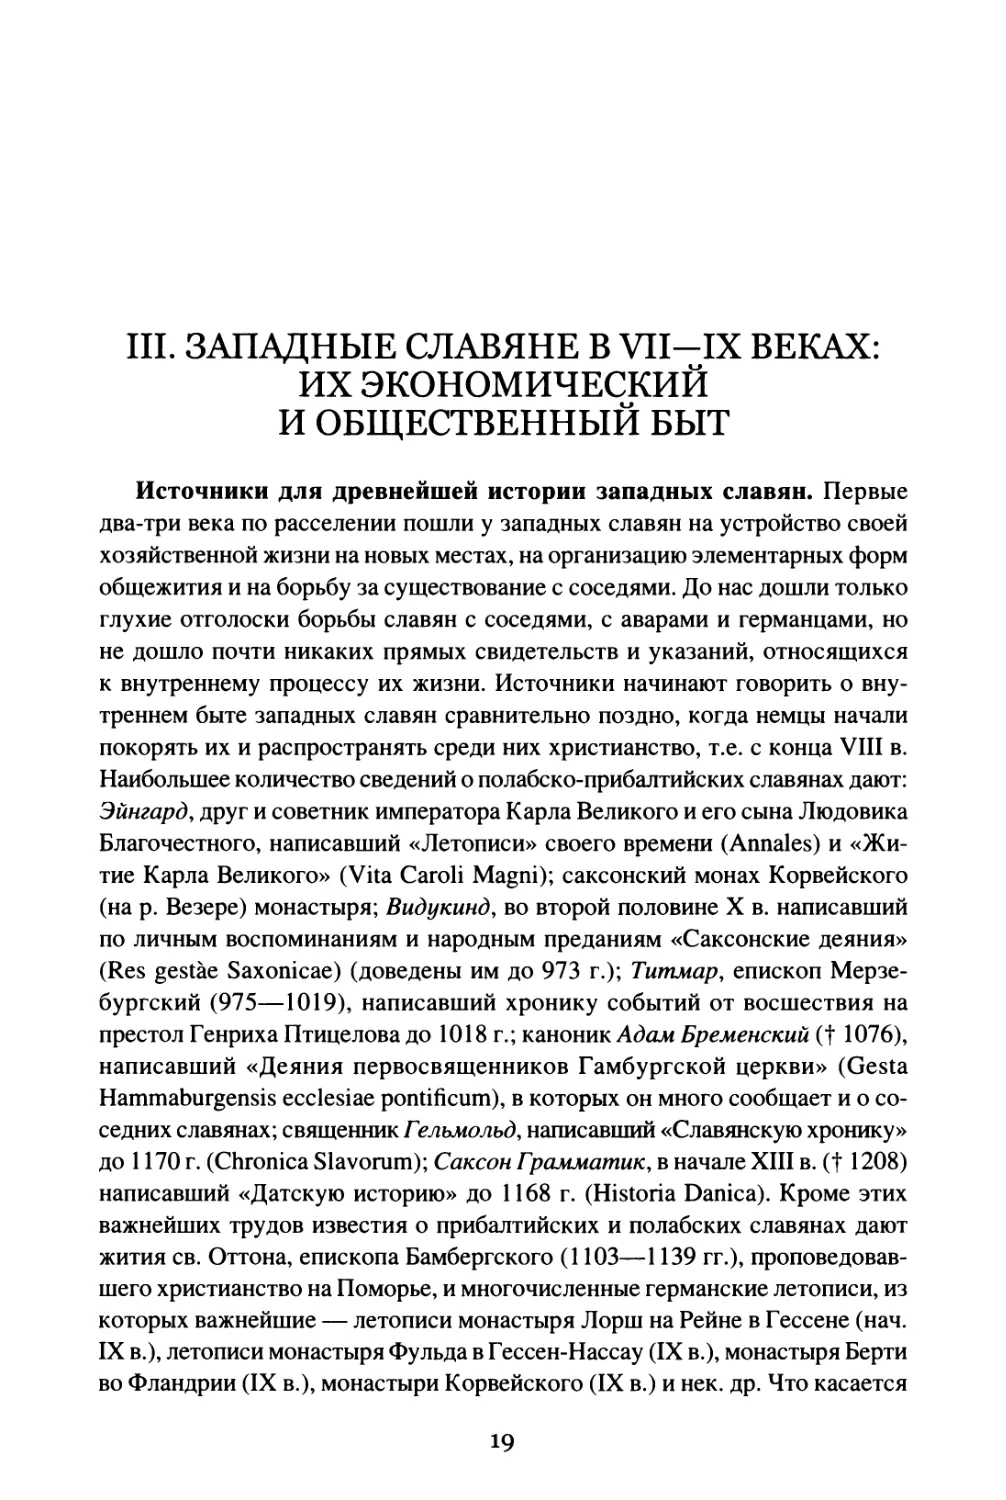 III. Западные славяне в VII—IX веках: их экономический и общественный быт